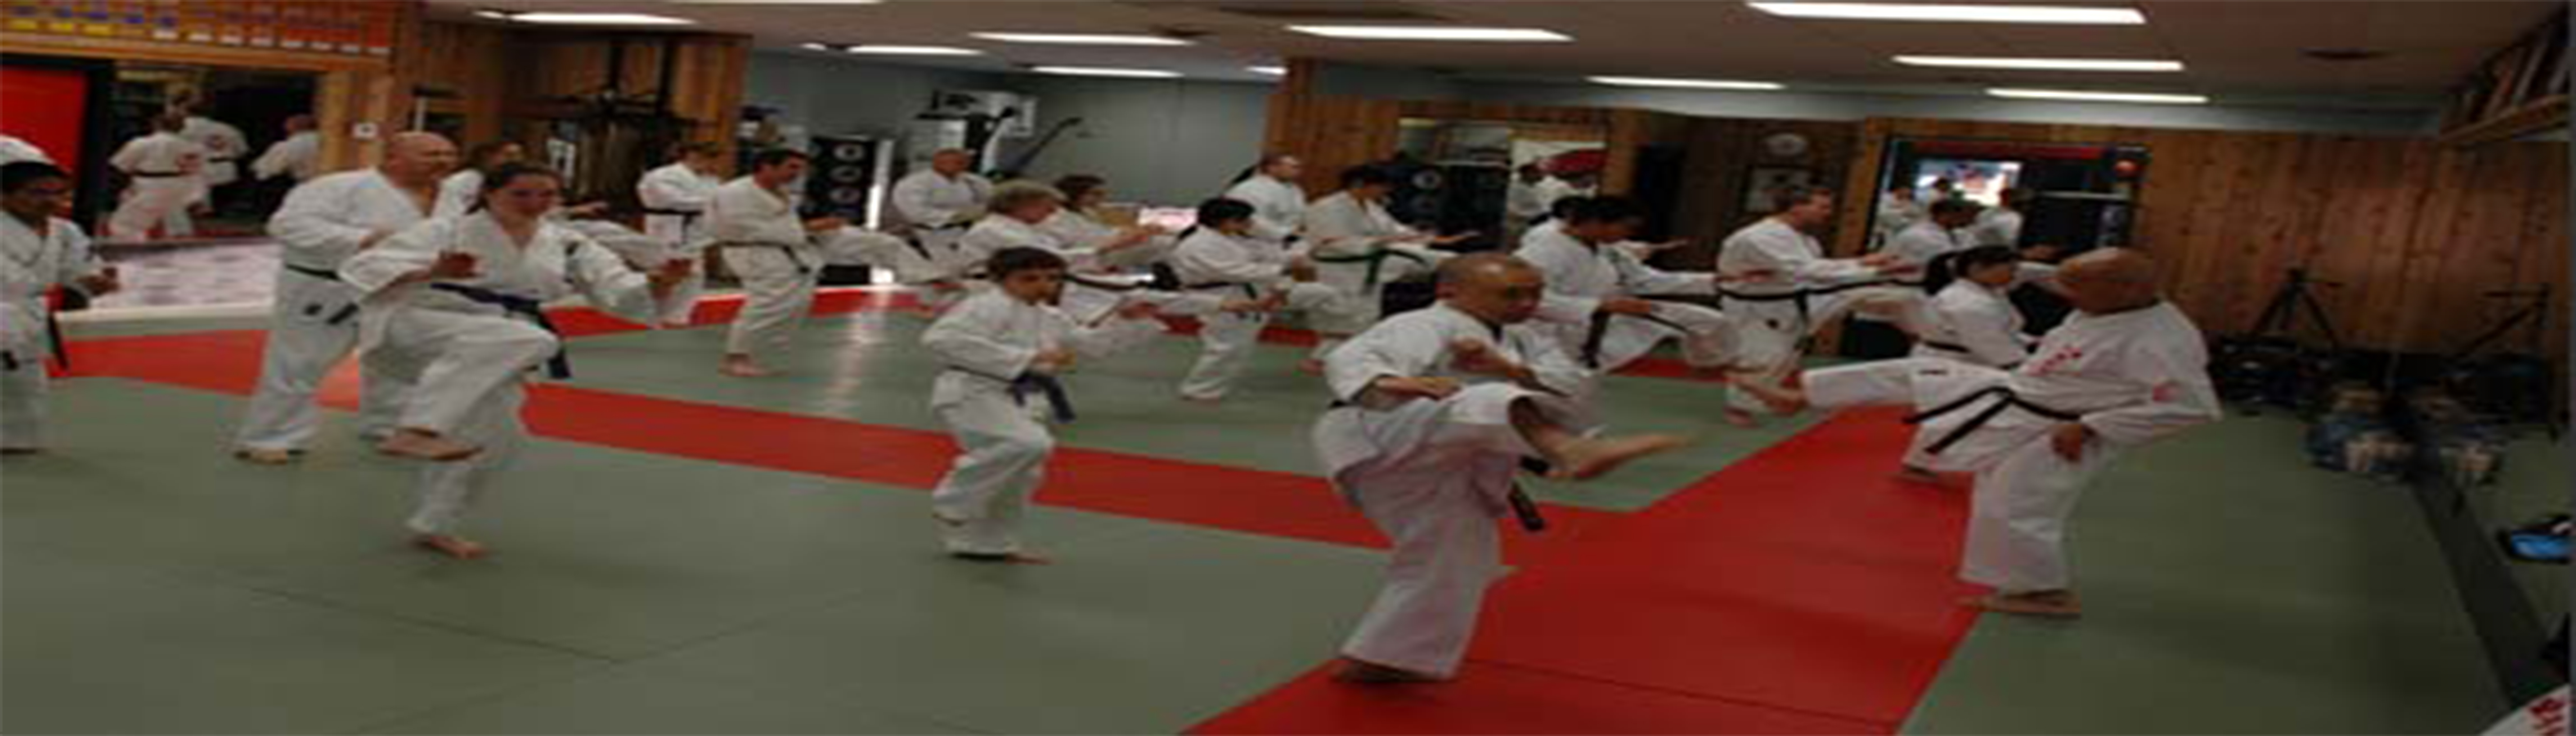 دانلود فیلم مستند The Spirit of Okinawan Karate